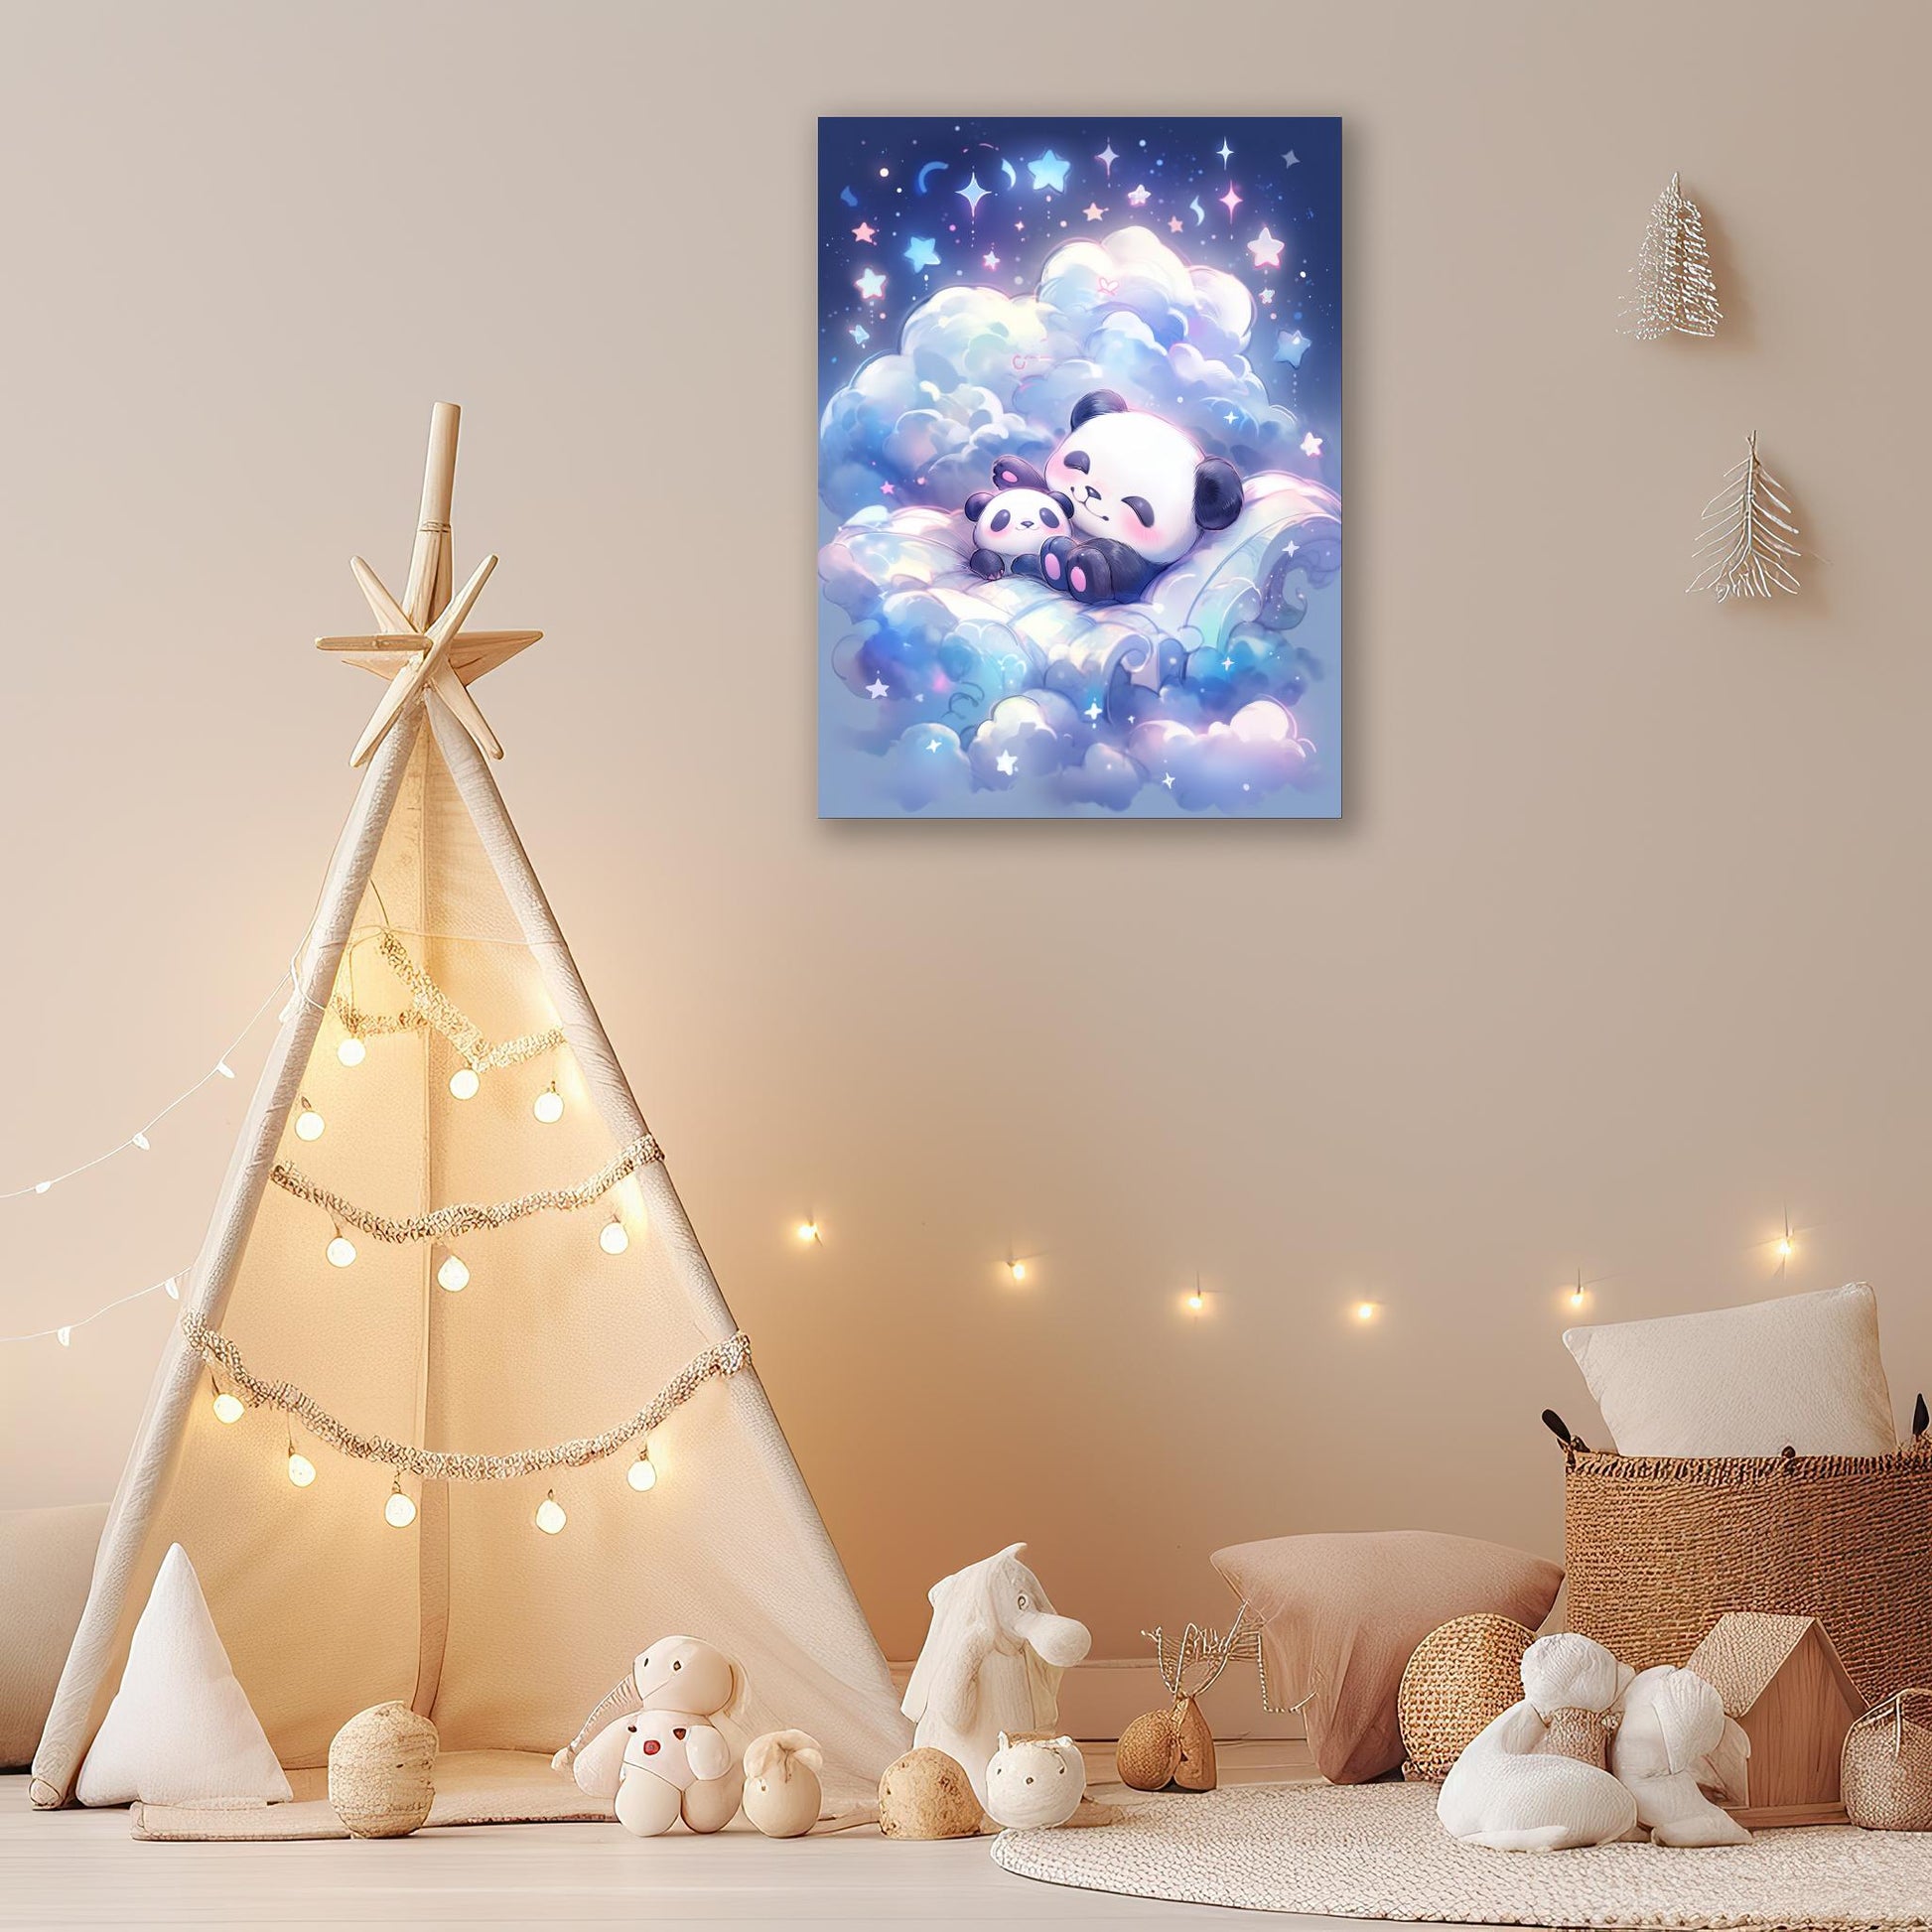 Starry Panda Cuddle - Atka Inspirations